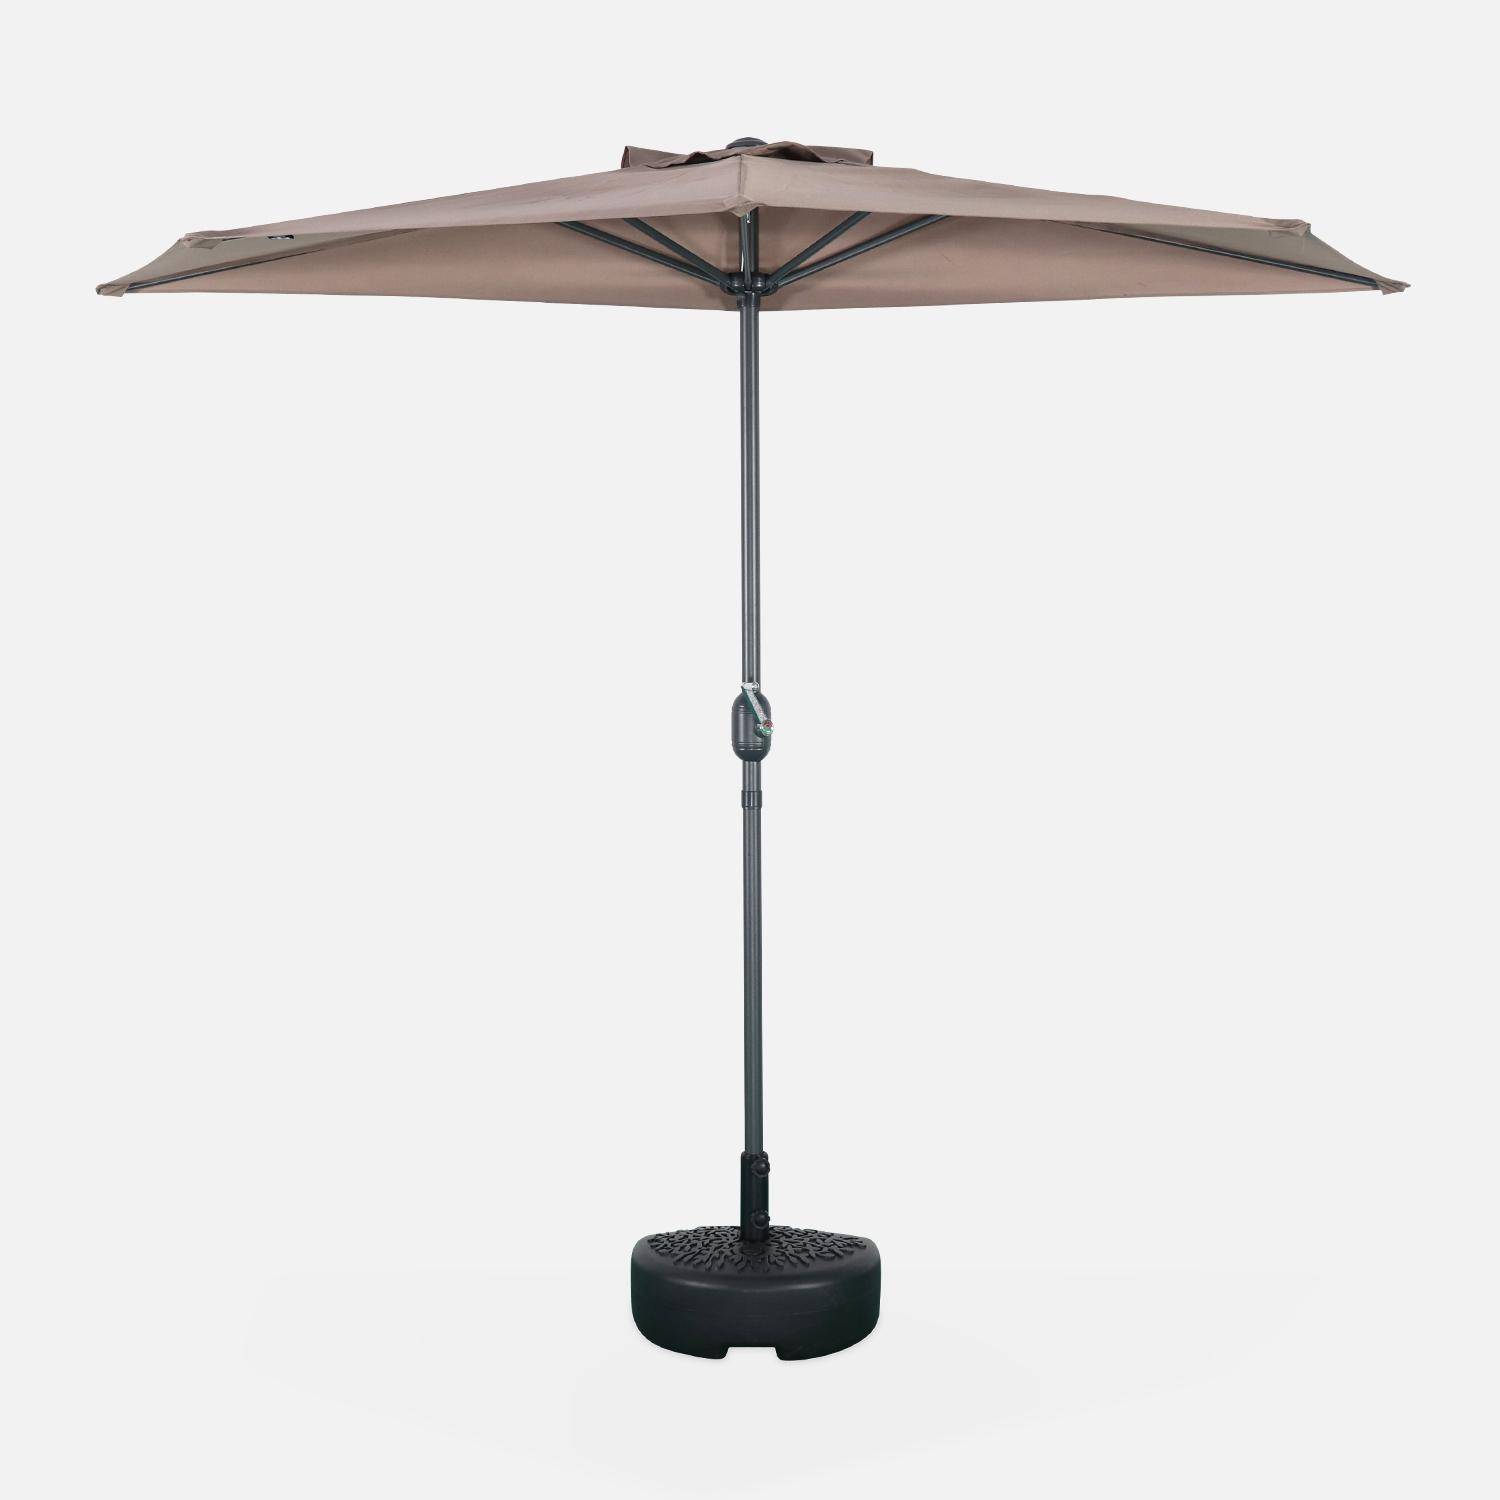  Parasol para balcón Ø250cm  – CALVI – Pequeño parasol recto, mástil en aluminio con manivela, tela color pardo  Photo2